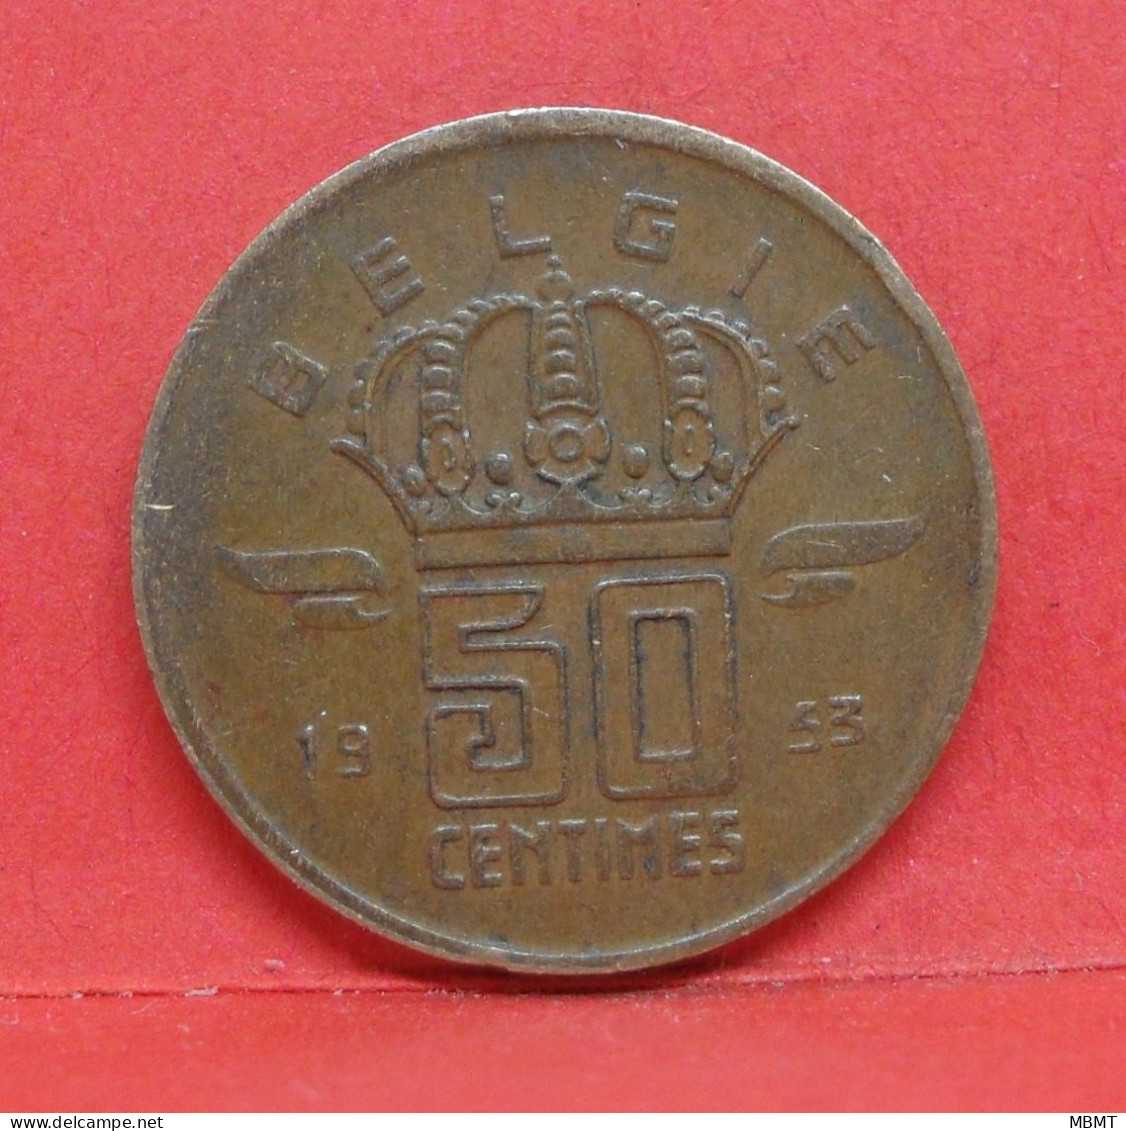 50 Centimes 1953 - TTB - Pièce Monnaie Belgie - Article N°1875 - 50 Centimes